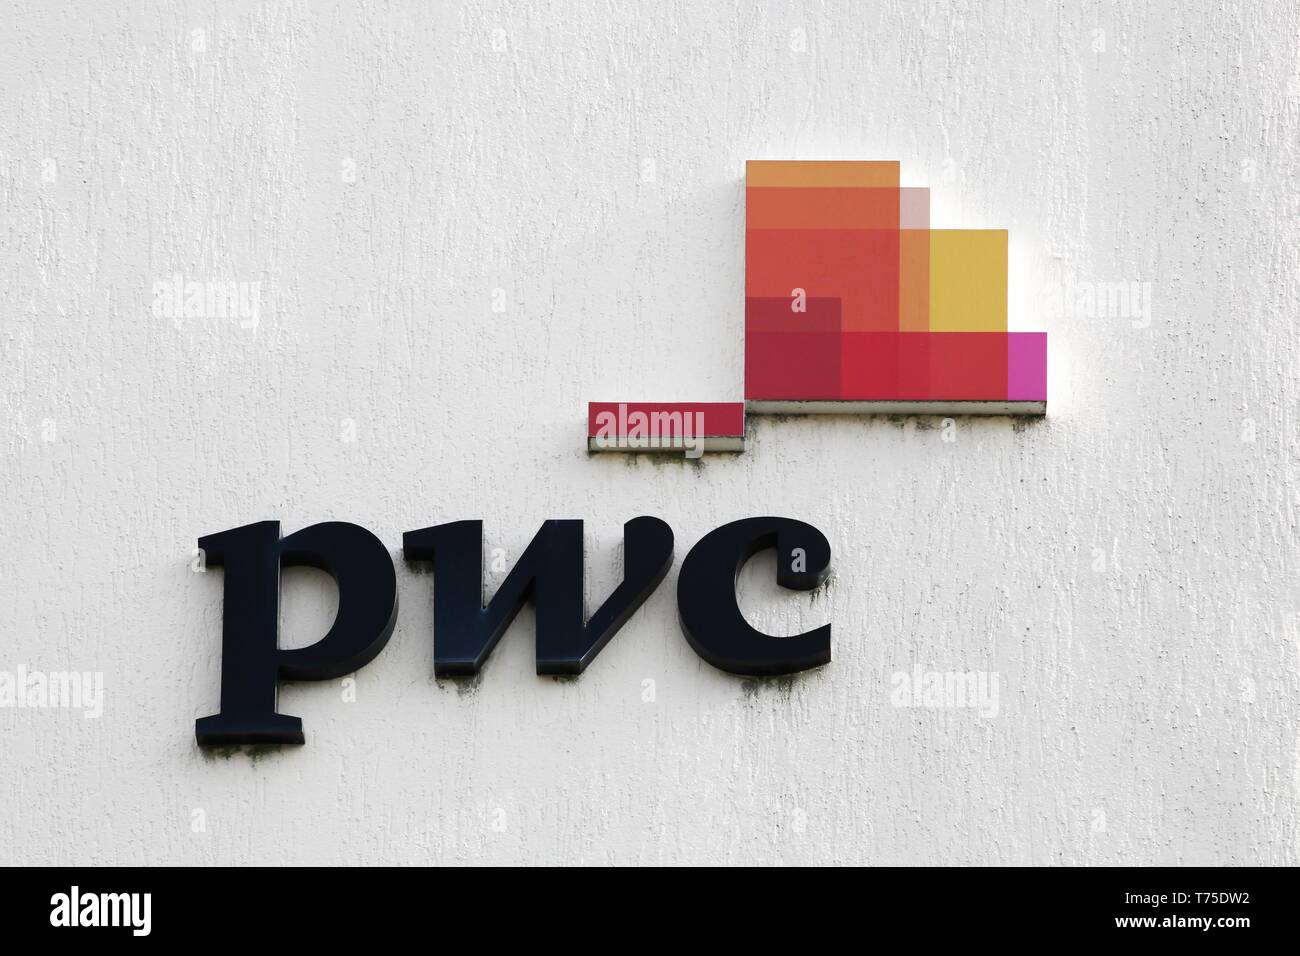 Bourg, Frankreich - April 5, 2019: PWC Logo auf eine Wand. PricewaterhouseCoopers ist eine multinationale Professional Services Network Stockfoto